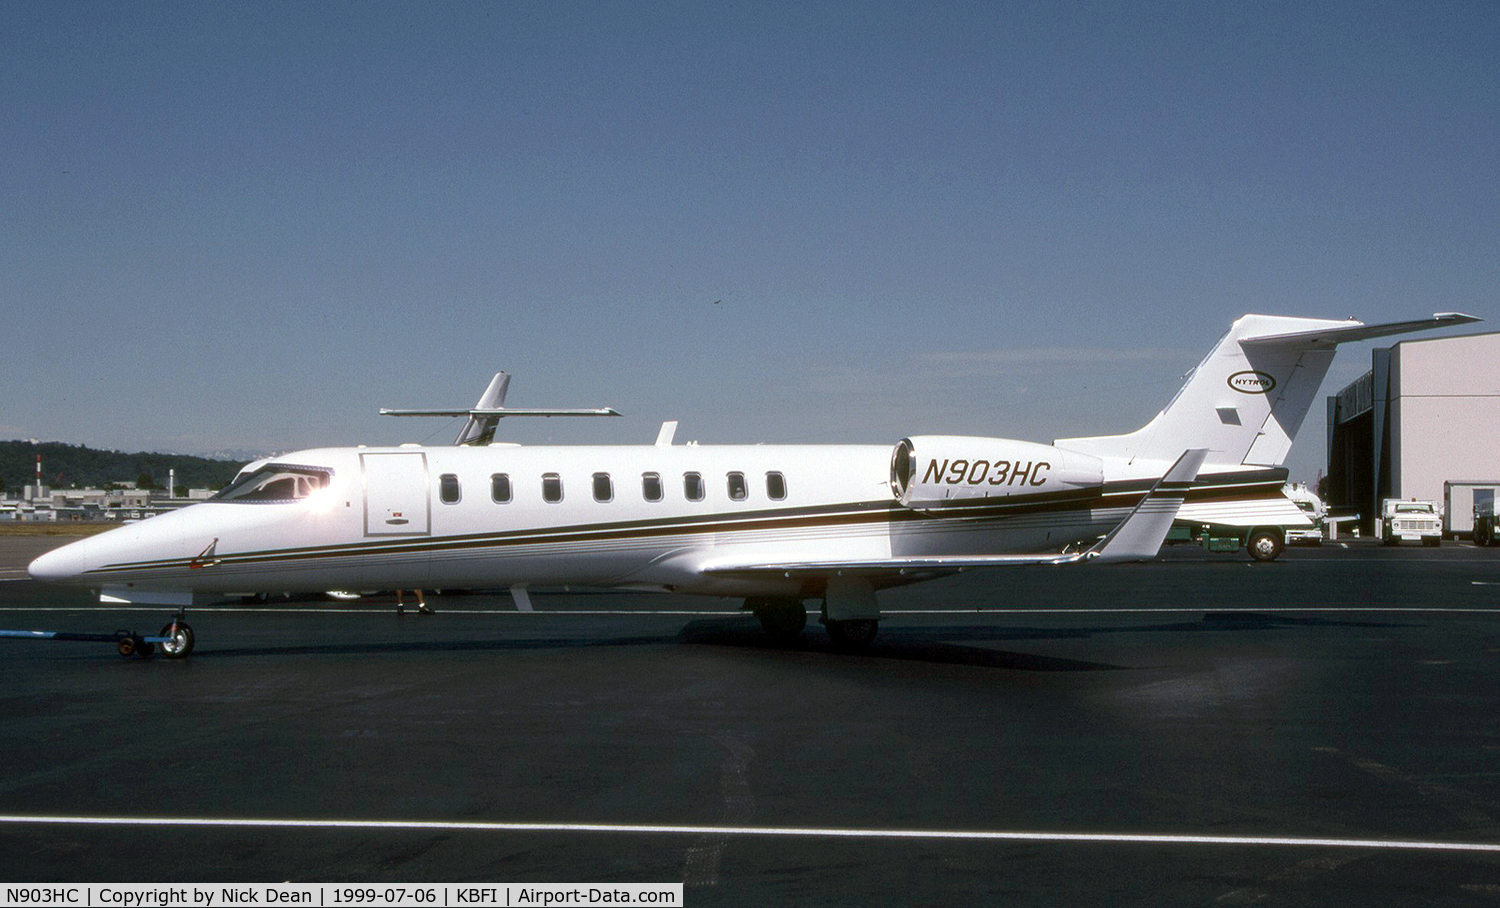 N903HC, 1998 Learjet 45 C/N 45-010, KBFI